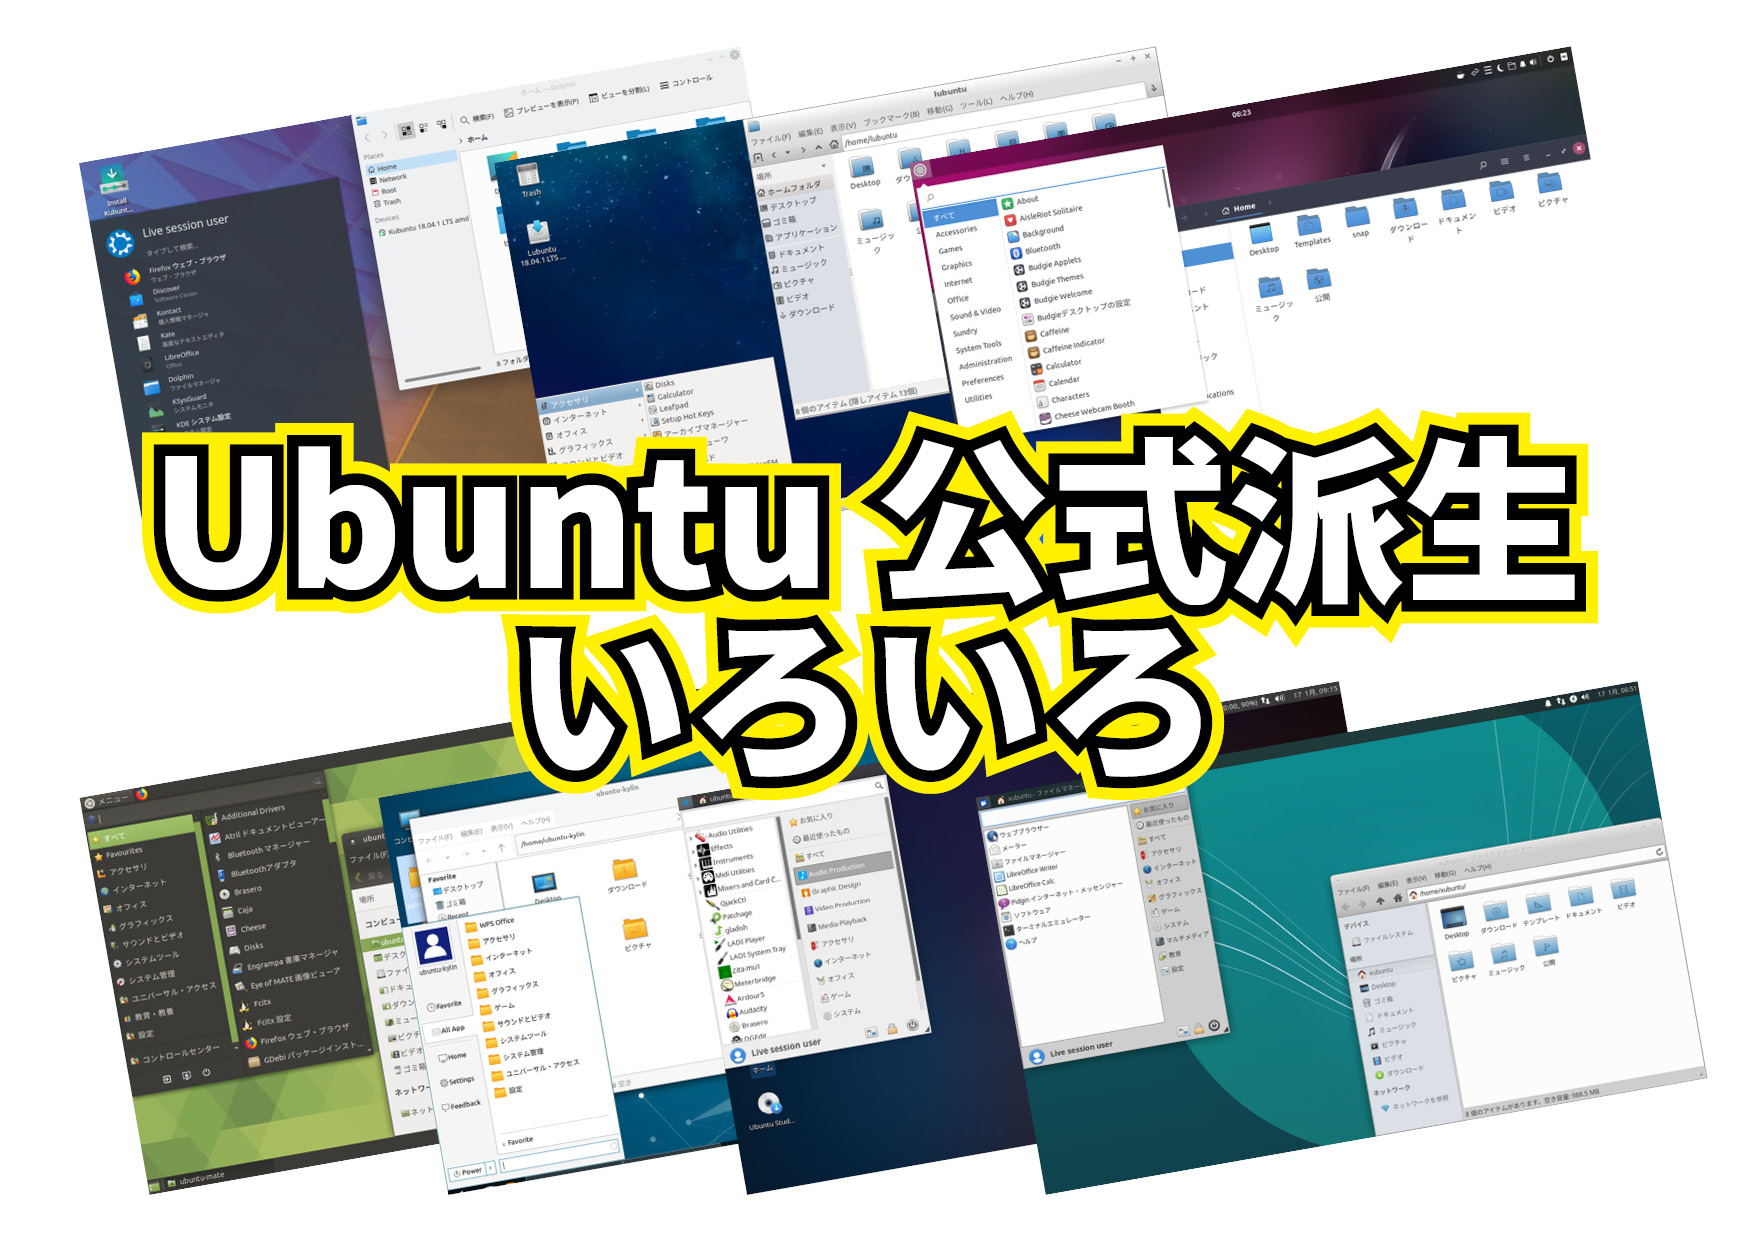 定番 Linux ディストロ Ubuntu の公式派生いろいろ。